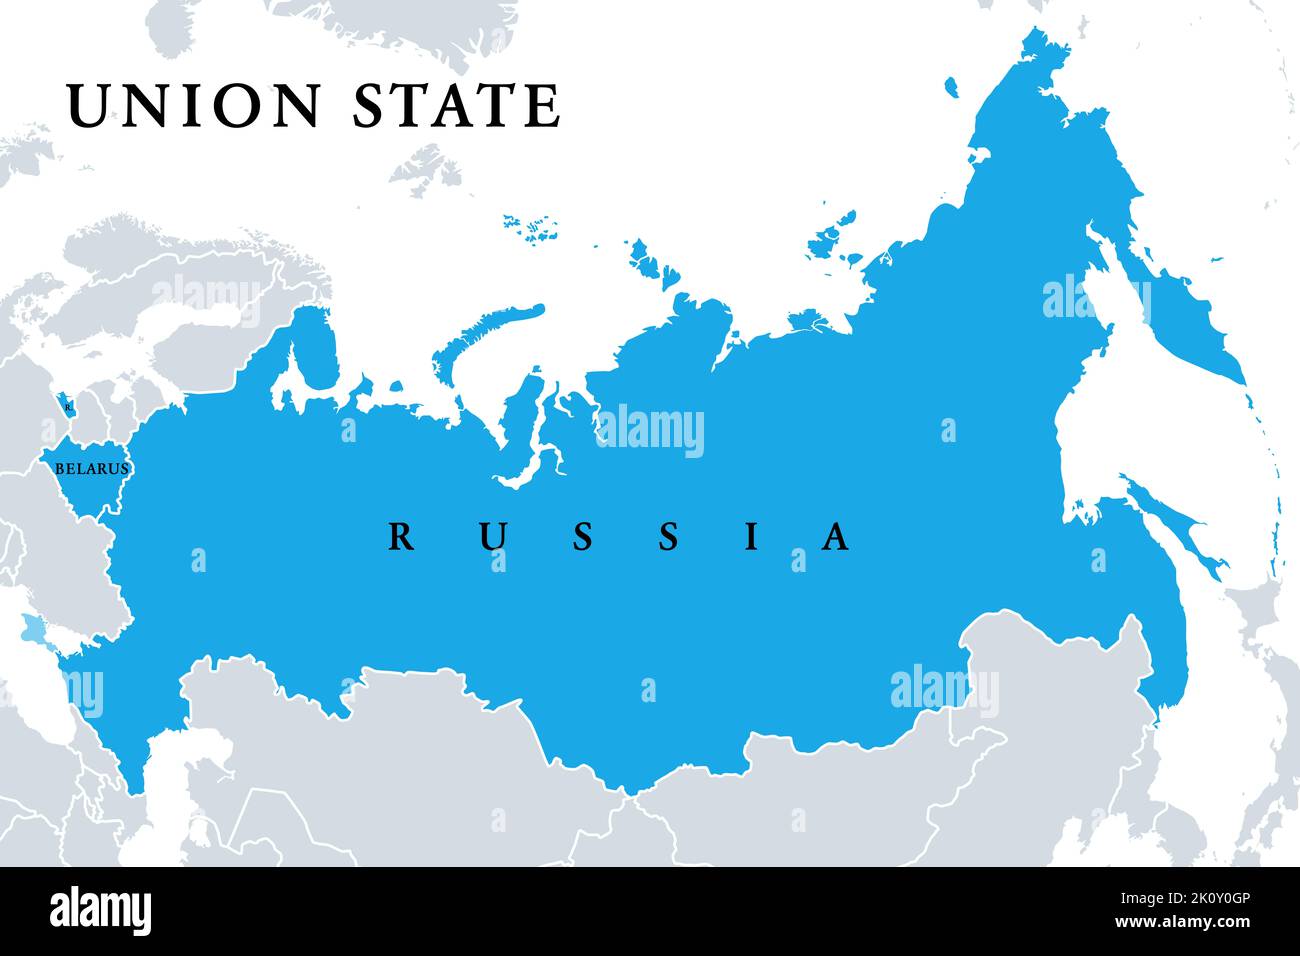 Unión de Estados, Estados miembros, mapa político. Oficialmente, el Estado de la Unión de Rusia y Belarús es una organización supranacional. Foto de stock